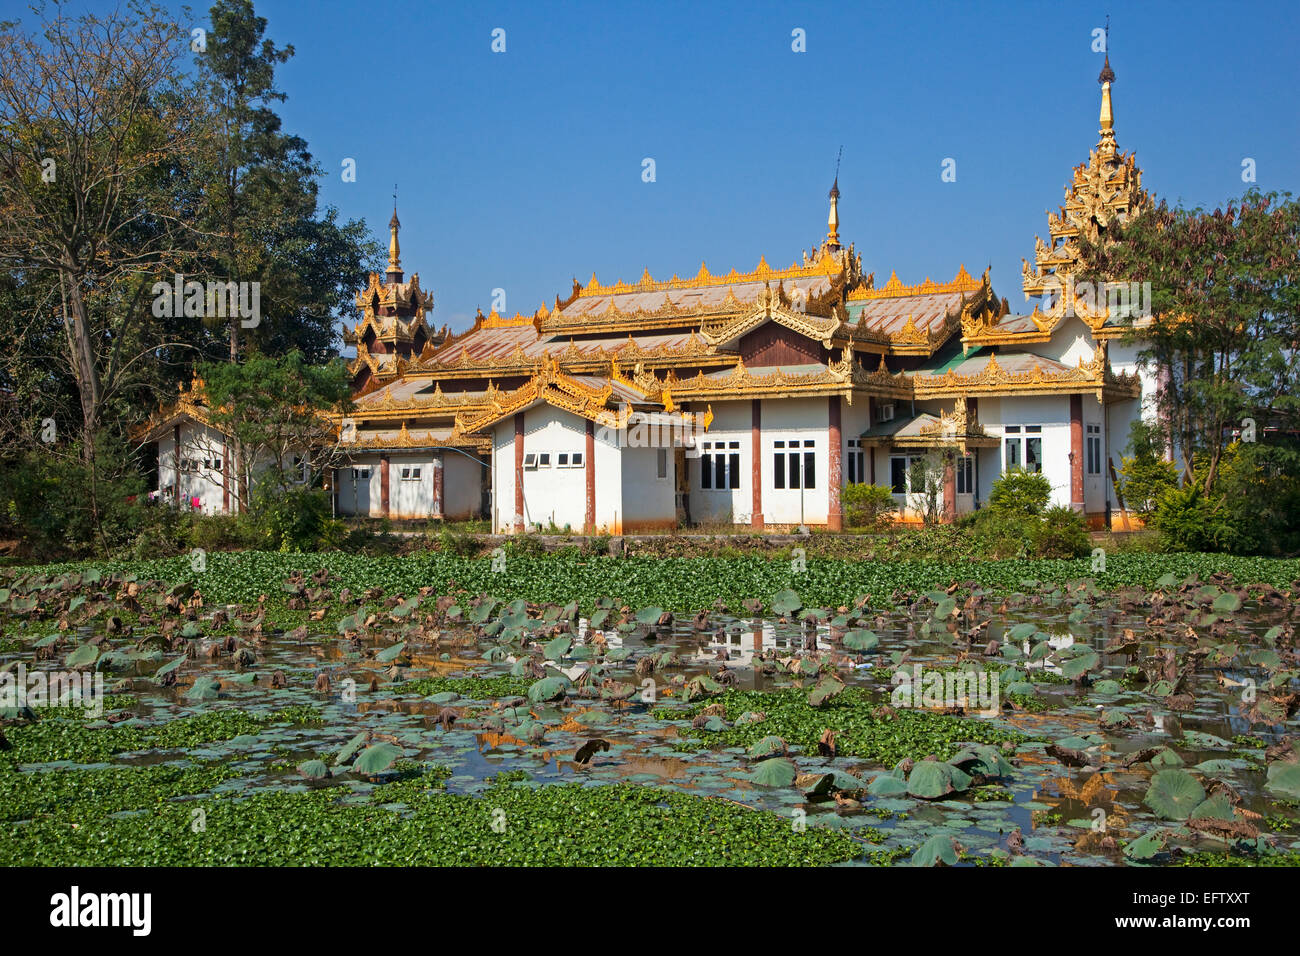 Le Golden World Hotel dans un temple bouddhiste dans la ville Keng Tung / Kengtung, Shan State, Myanmar / Birmanie Banque D'Images